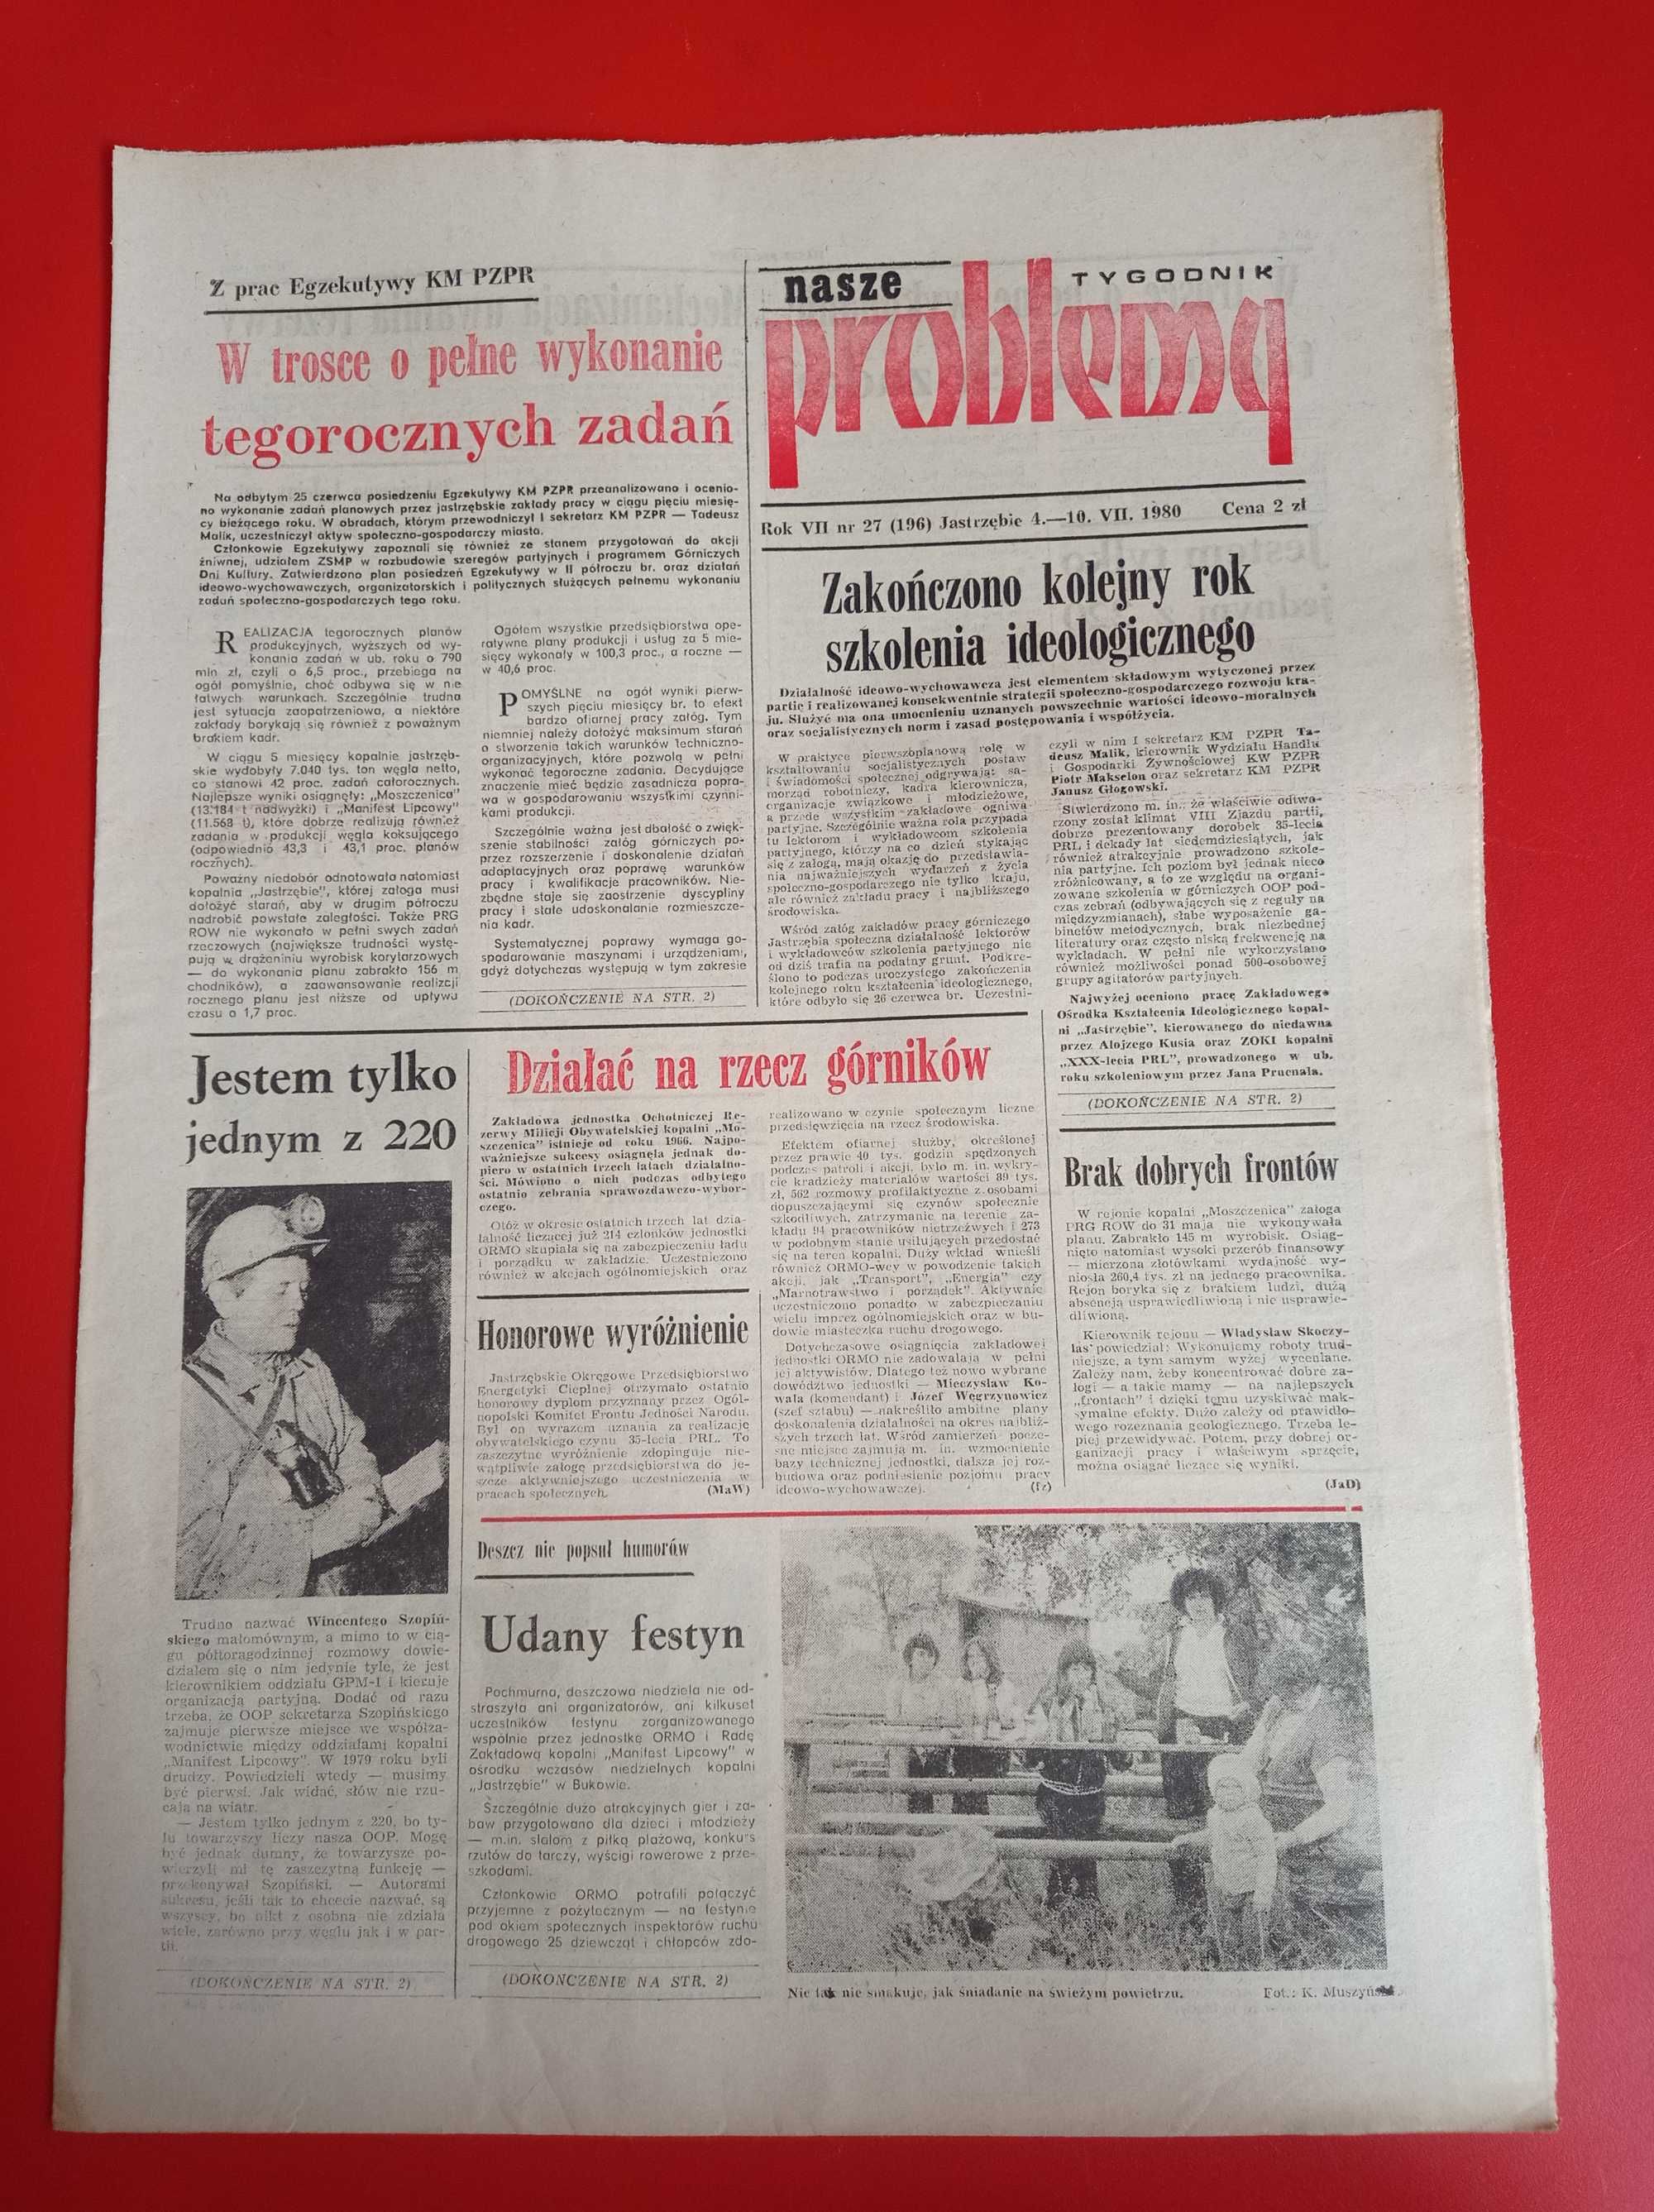 Nasze problemy, Jastrzębie, nr 28, 11-17 lipca 1980